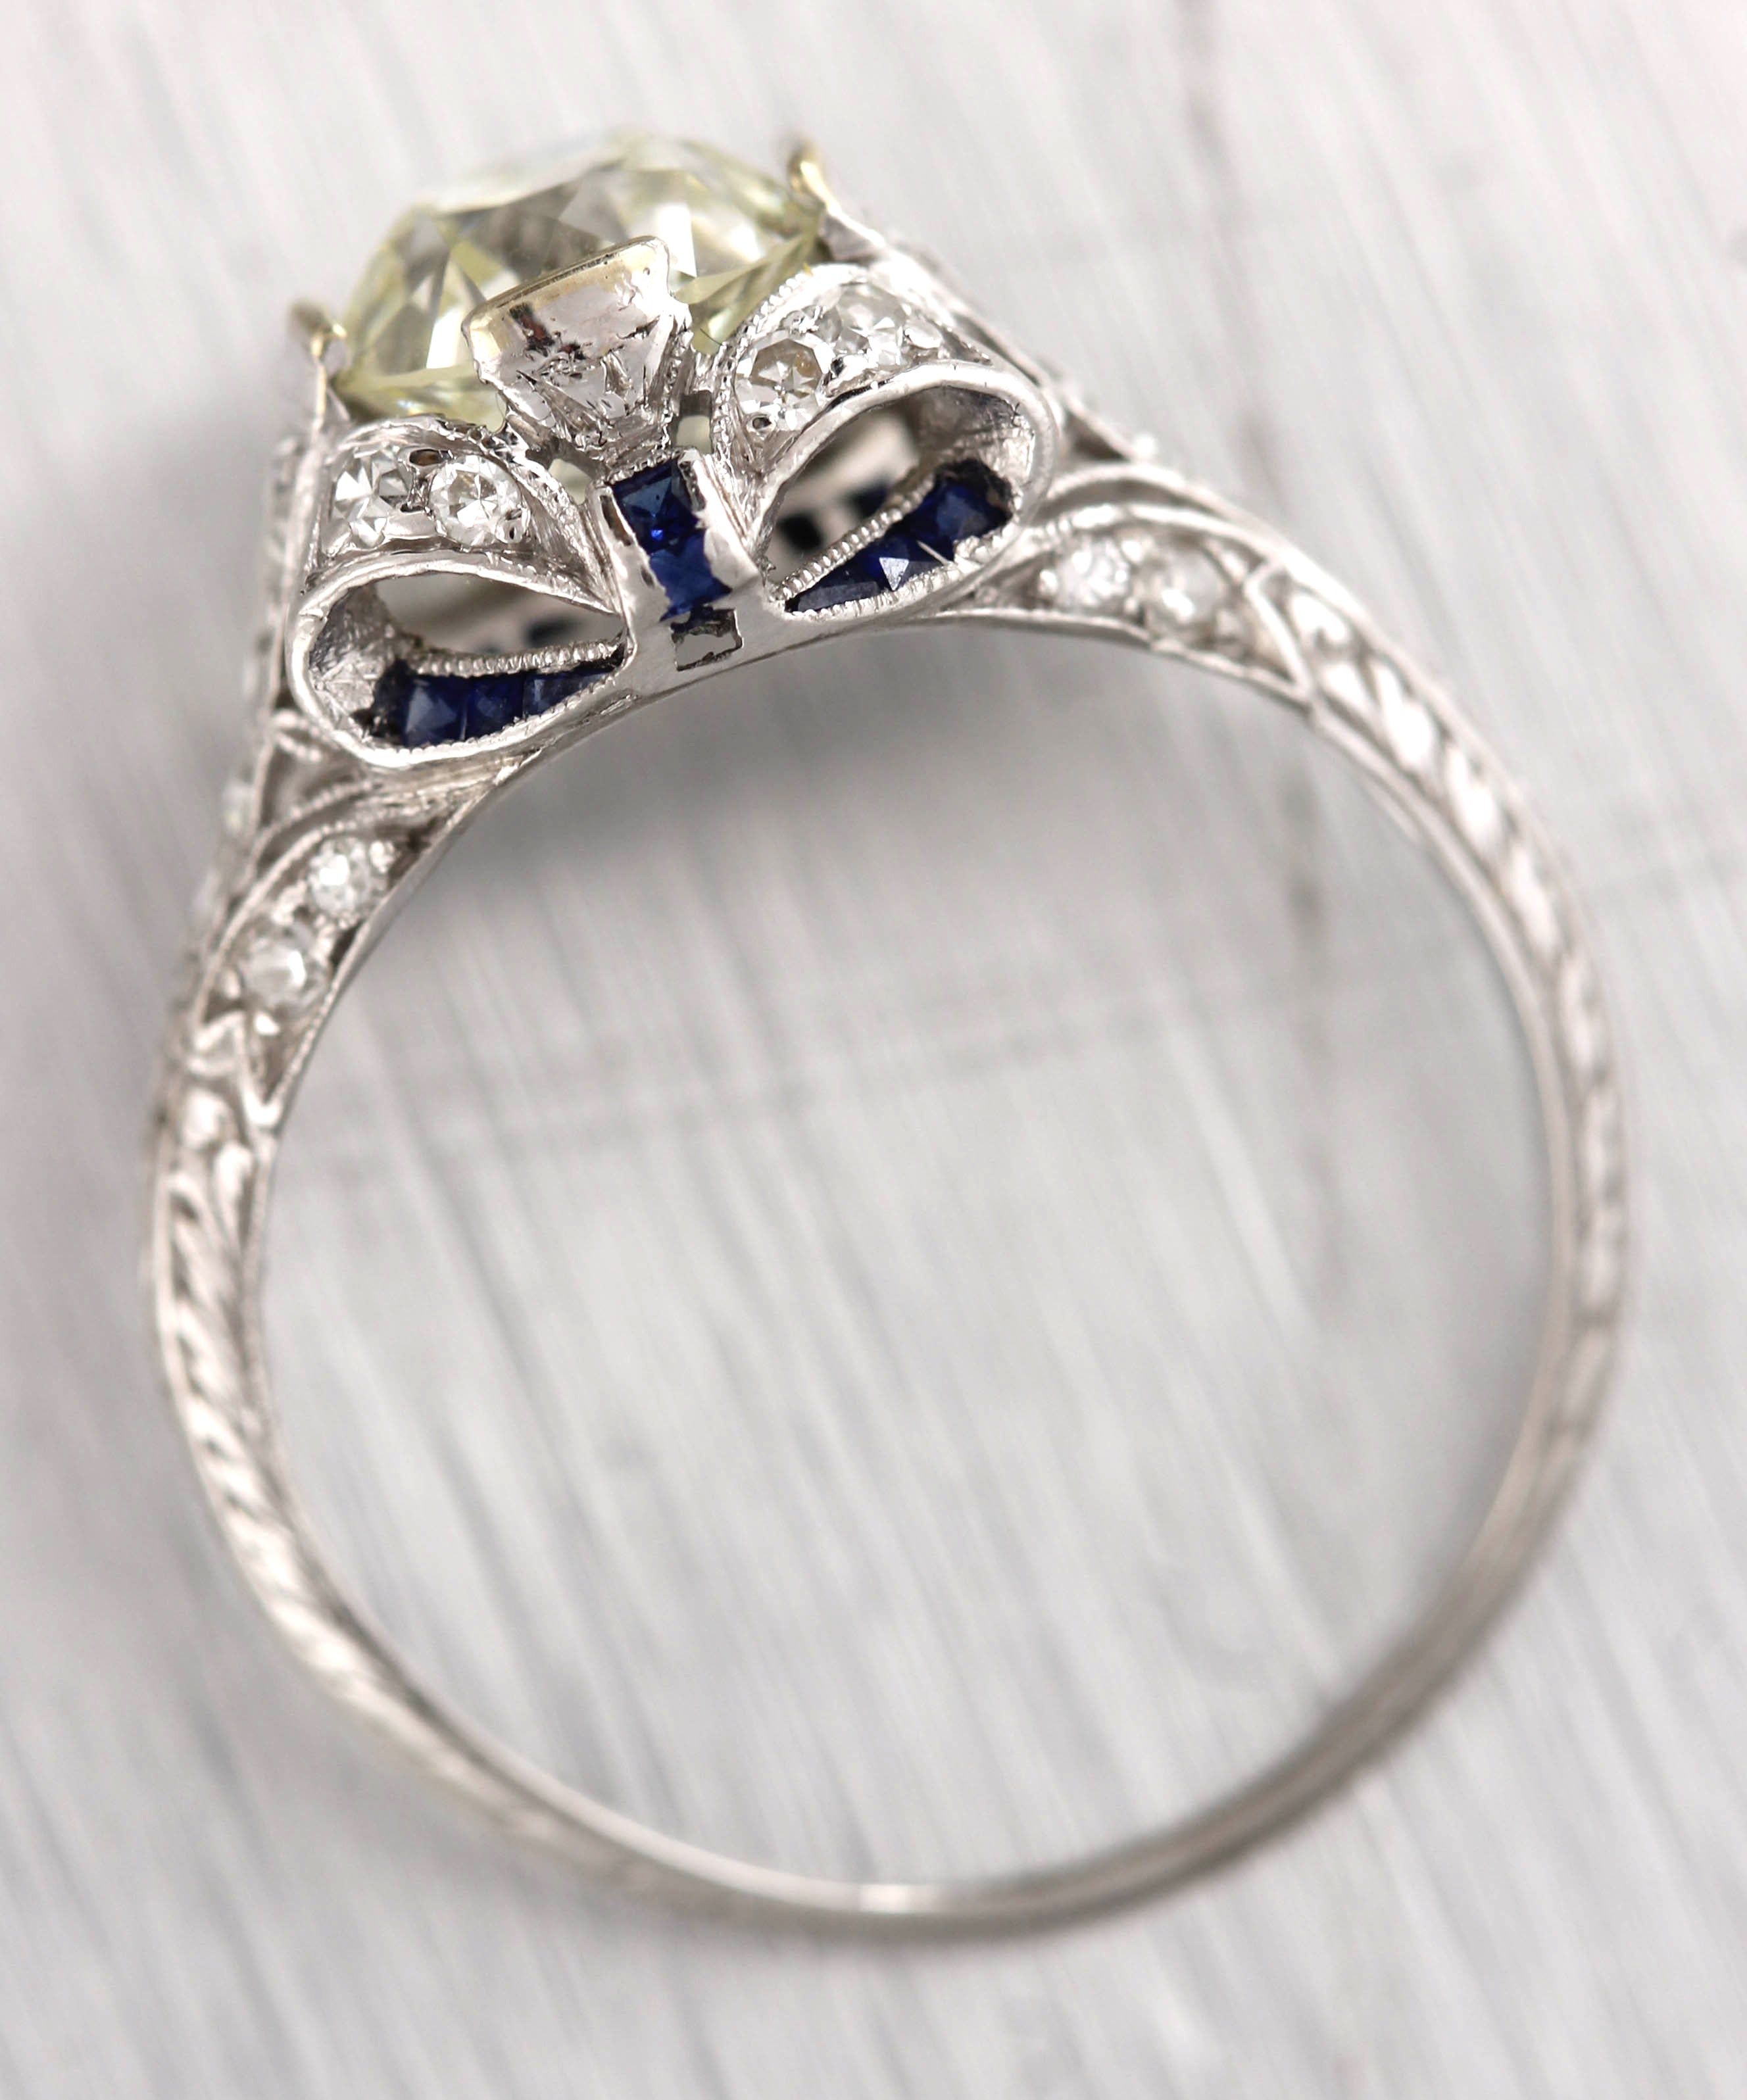 Ladies Antique Art Deco Platinum 2.12ctw Diamond Sapphire Engagement Ring EGL